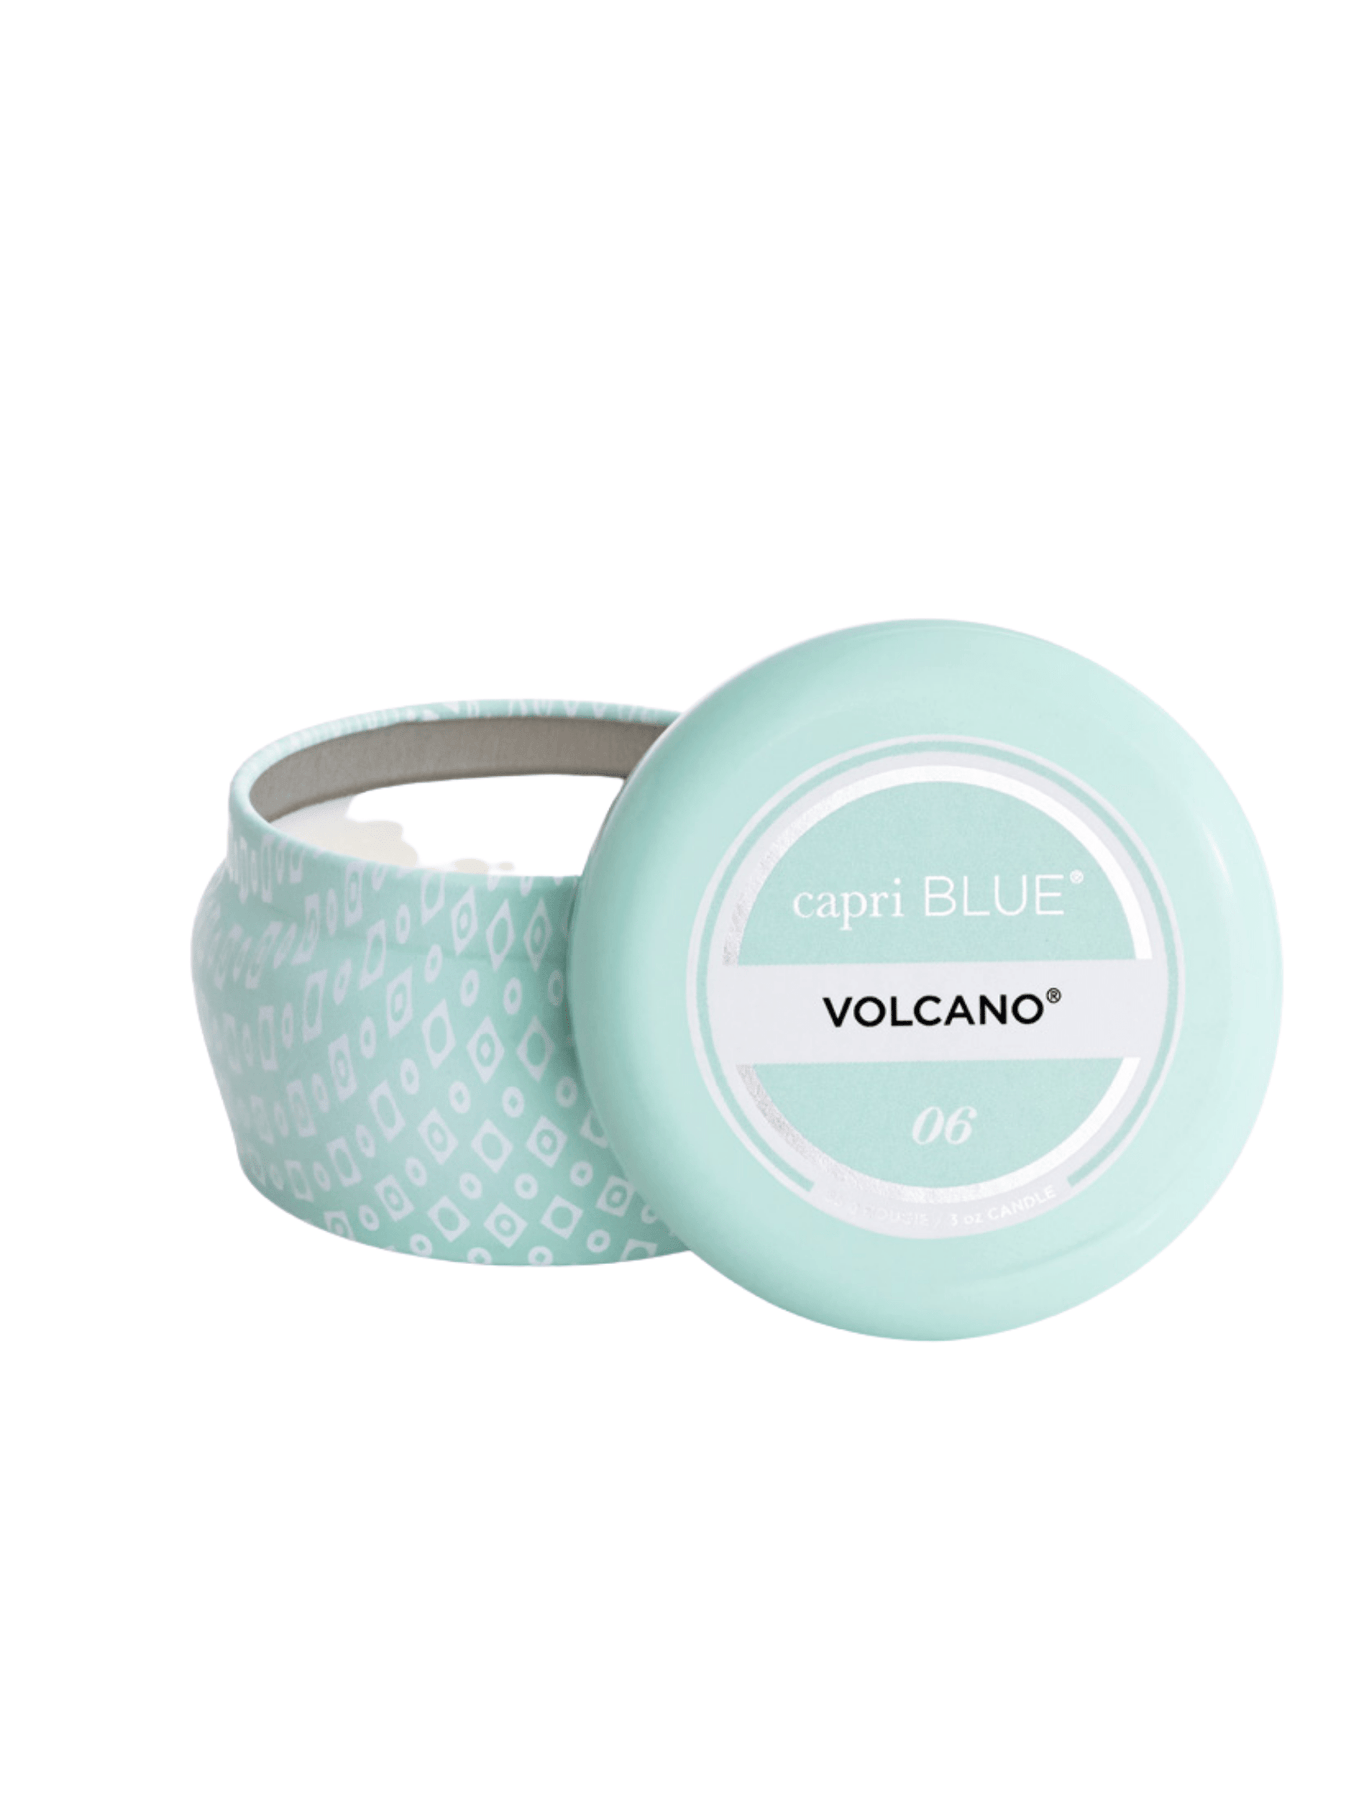 Capri Blue Volcano Aqua Petite Signature Jar Candle 8 oz.